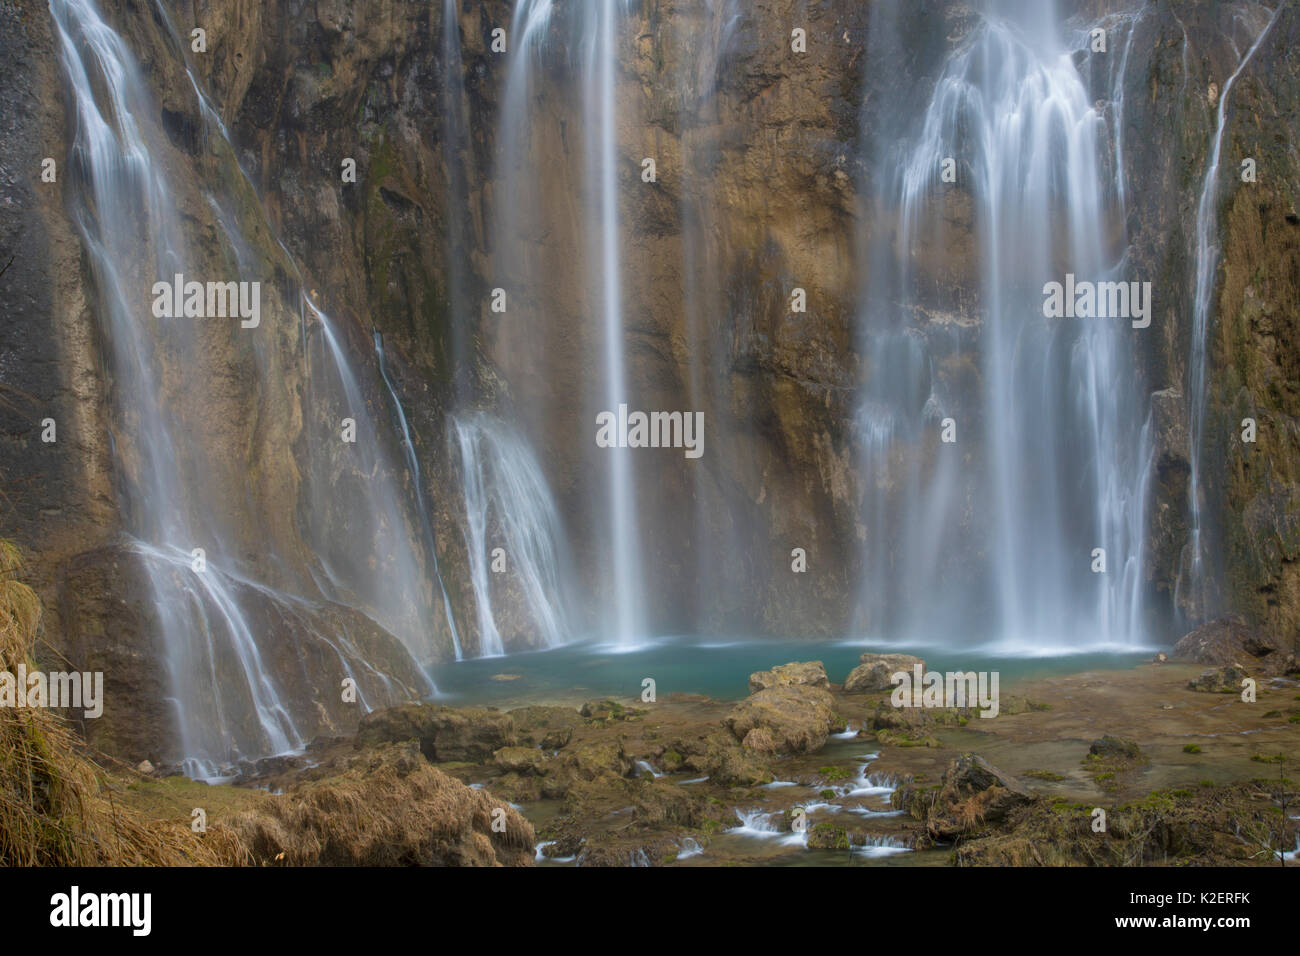 78 metro alto Grand cascata (Veliki slap), il Parco Nazionale dei Laghi di Plitvice, Croazia. Gennaio. Foto Stock